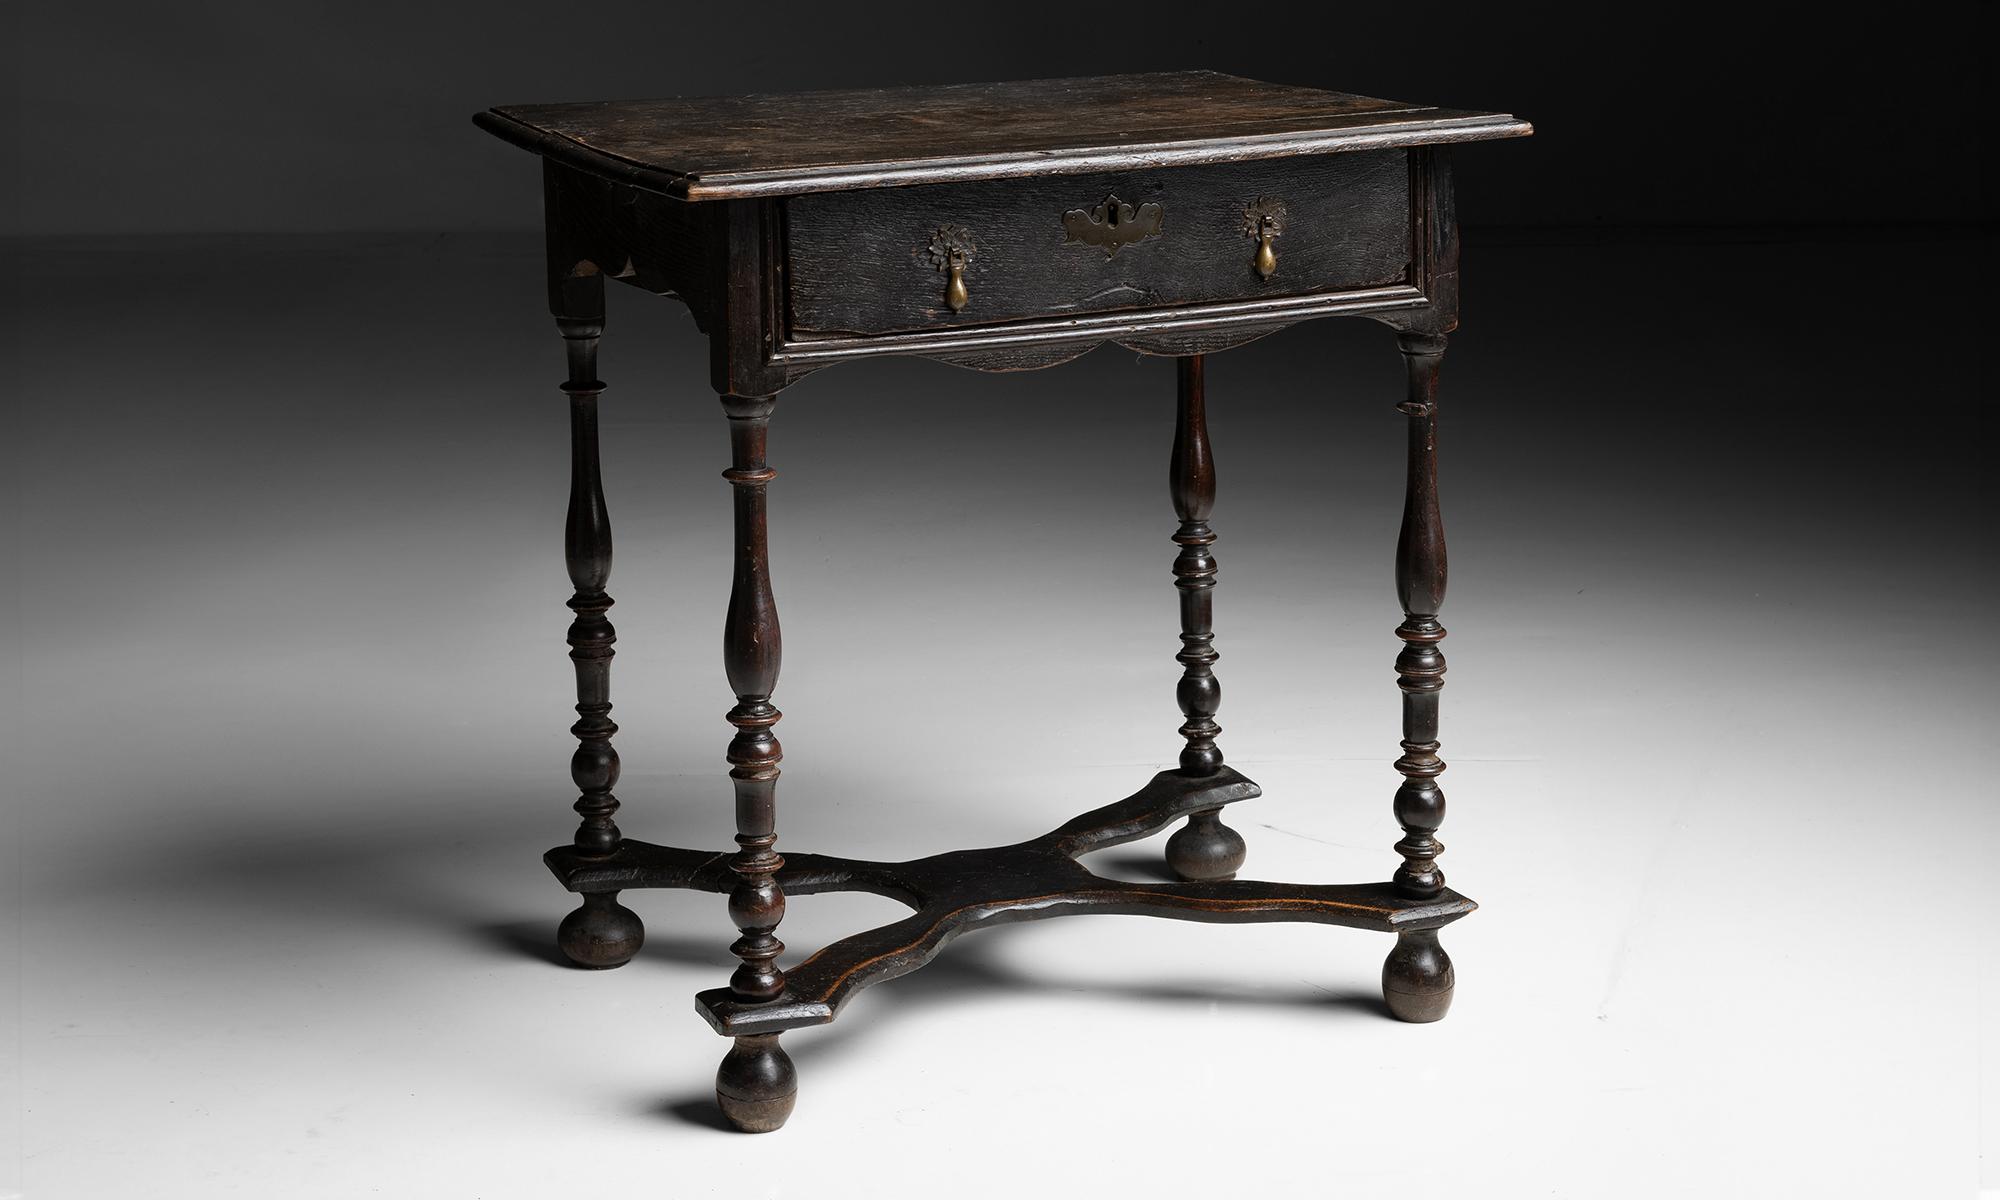 Table d'appoint ébonisée

Angleterre vers 1680

Table d'appoint en chêne ébonisé avec pieds tournés et quincaillerie en laiton.

27,25 